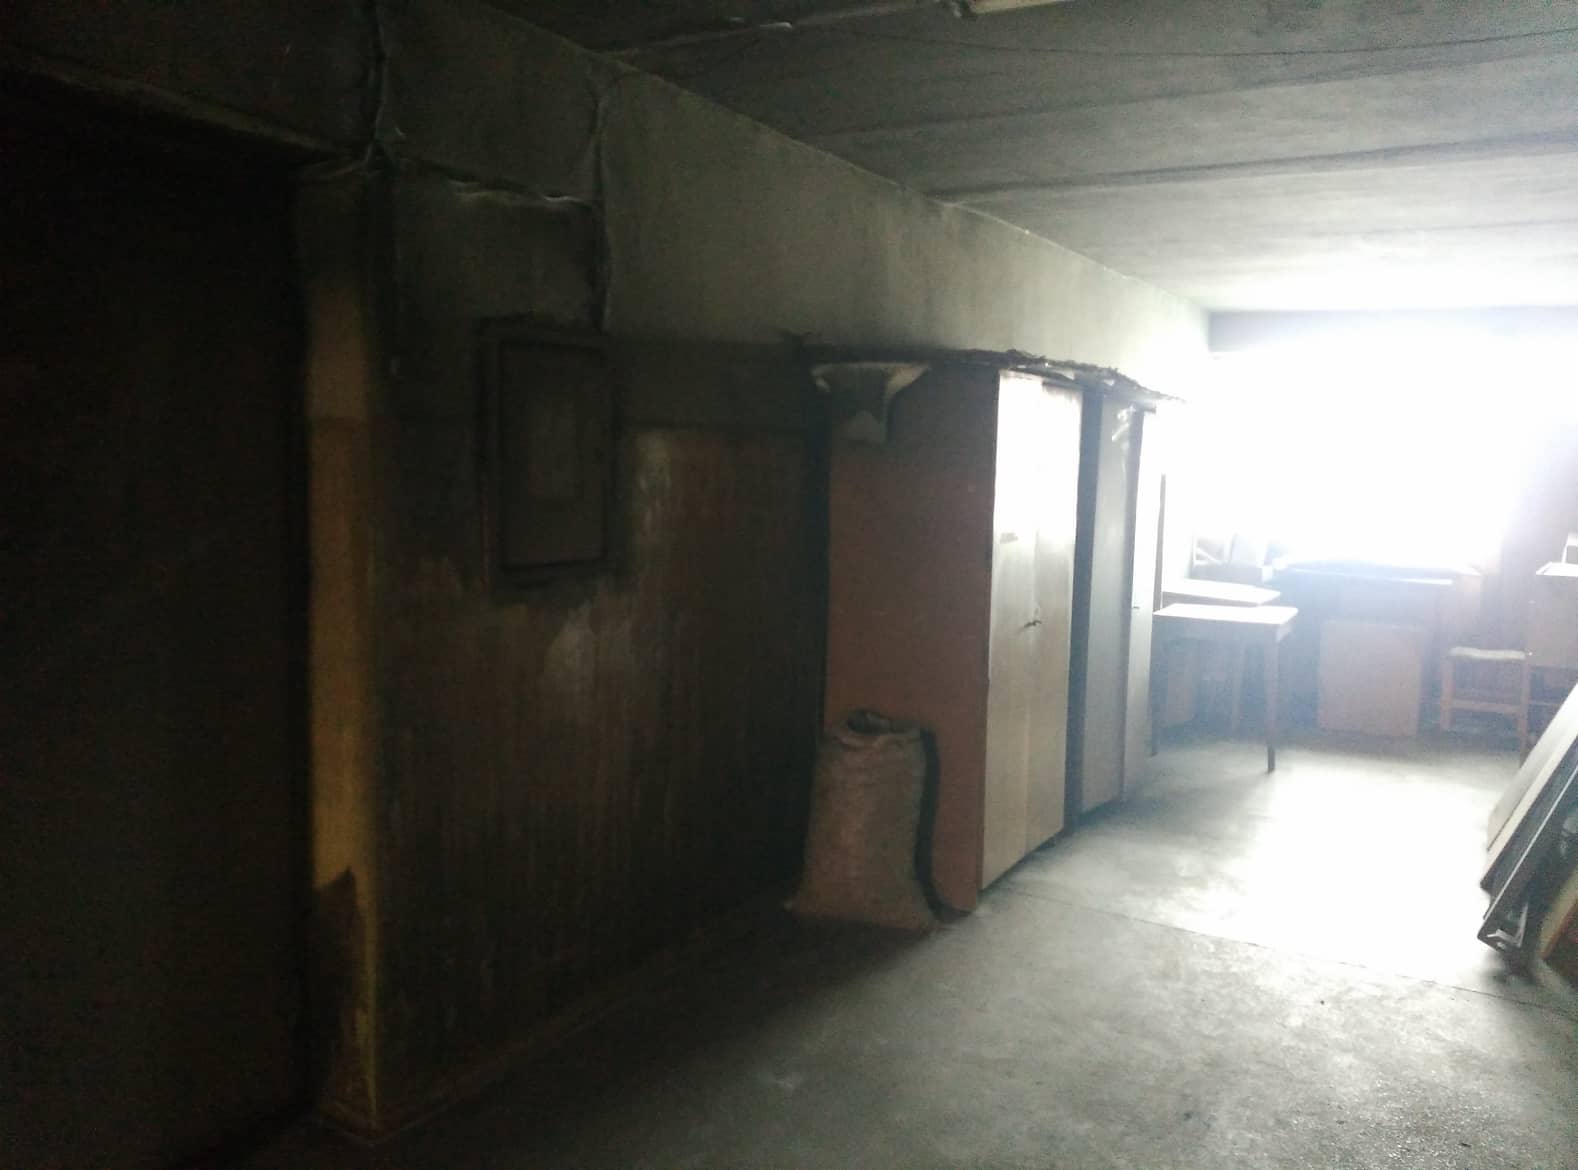 В областном центре Закарпатья горело общежитие